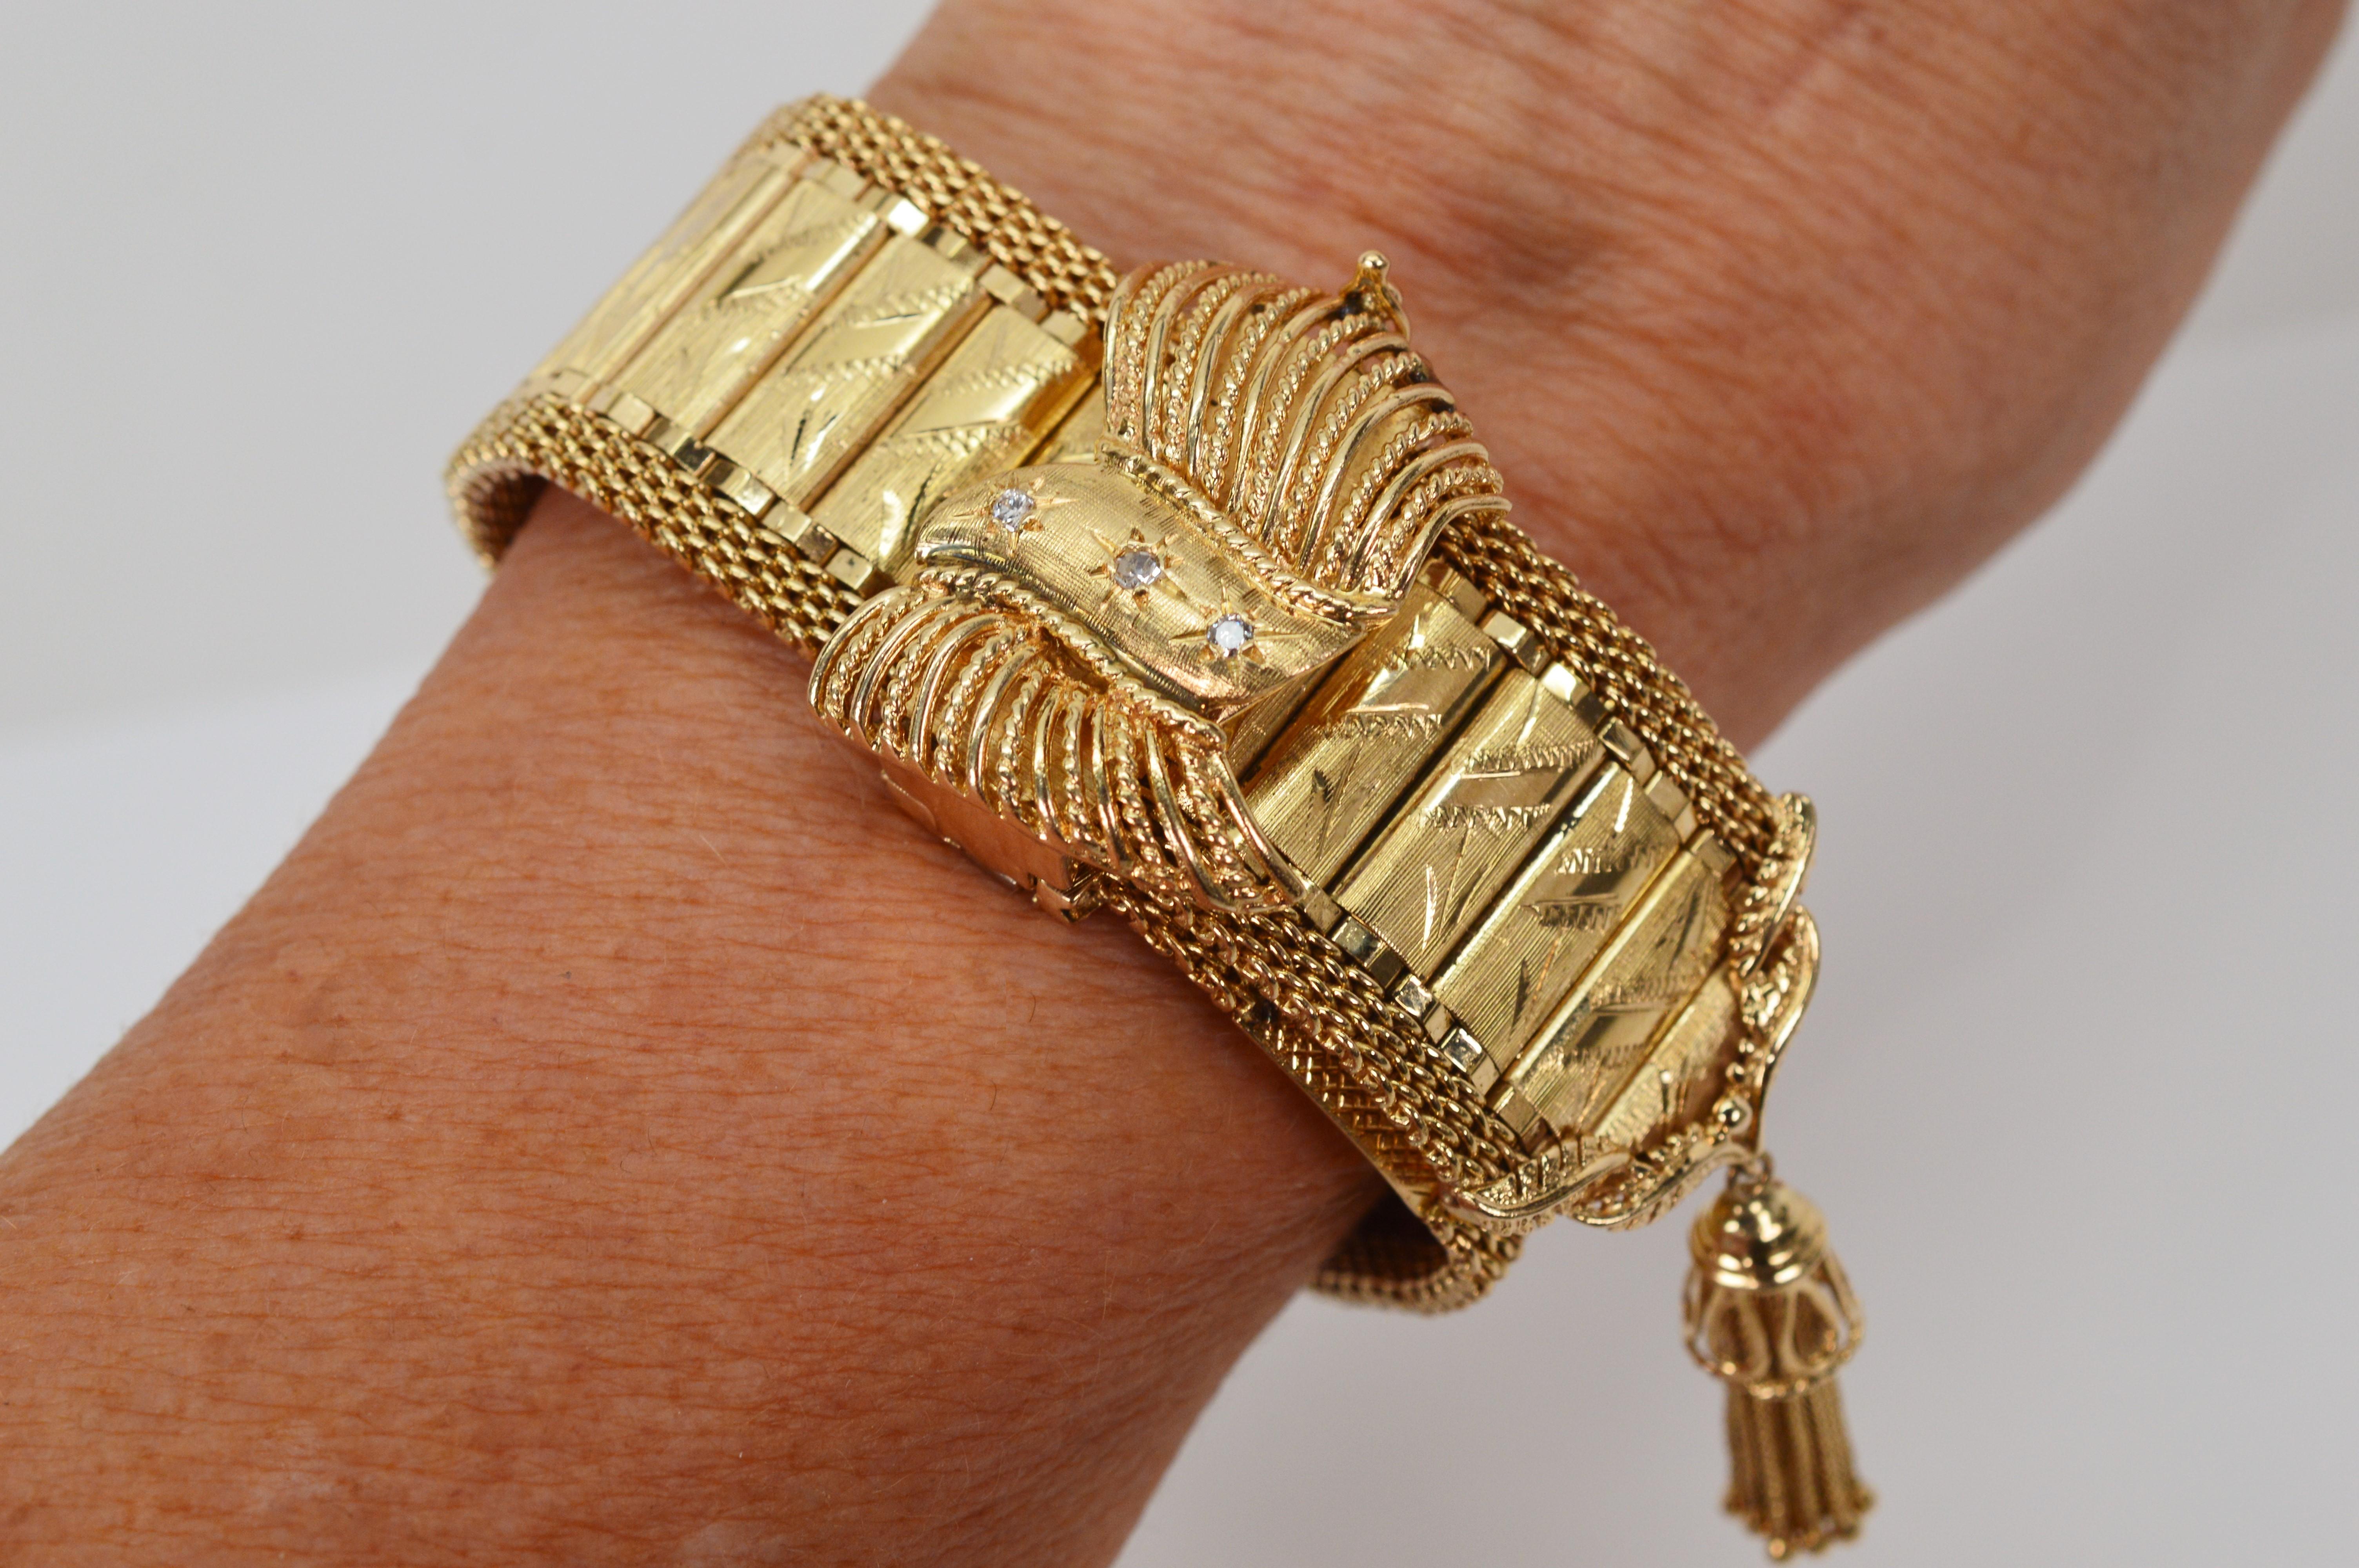 Des accessoires de style victorien et une pièce d'horlogerie dissimulée confèrent à ce magnifique bracelet en or jaune 14 carats de style enveloppant un caractère vintage.  son style époustouflant.
Encadré d'une maille dorée arrondie sur sa longueur